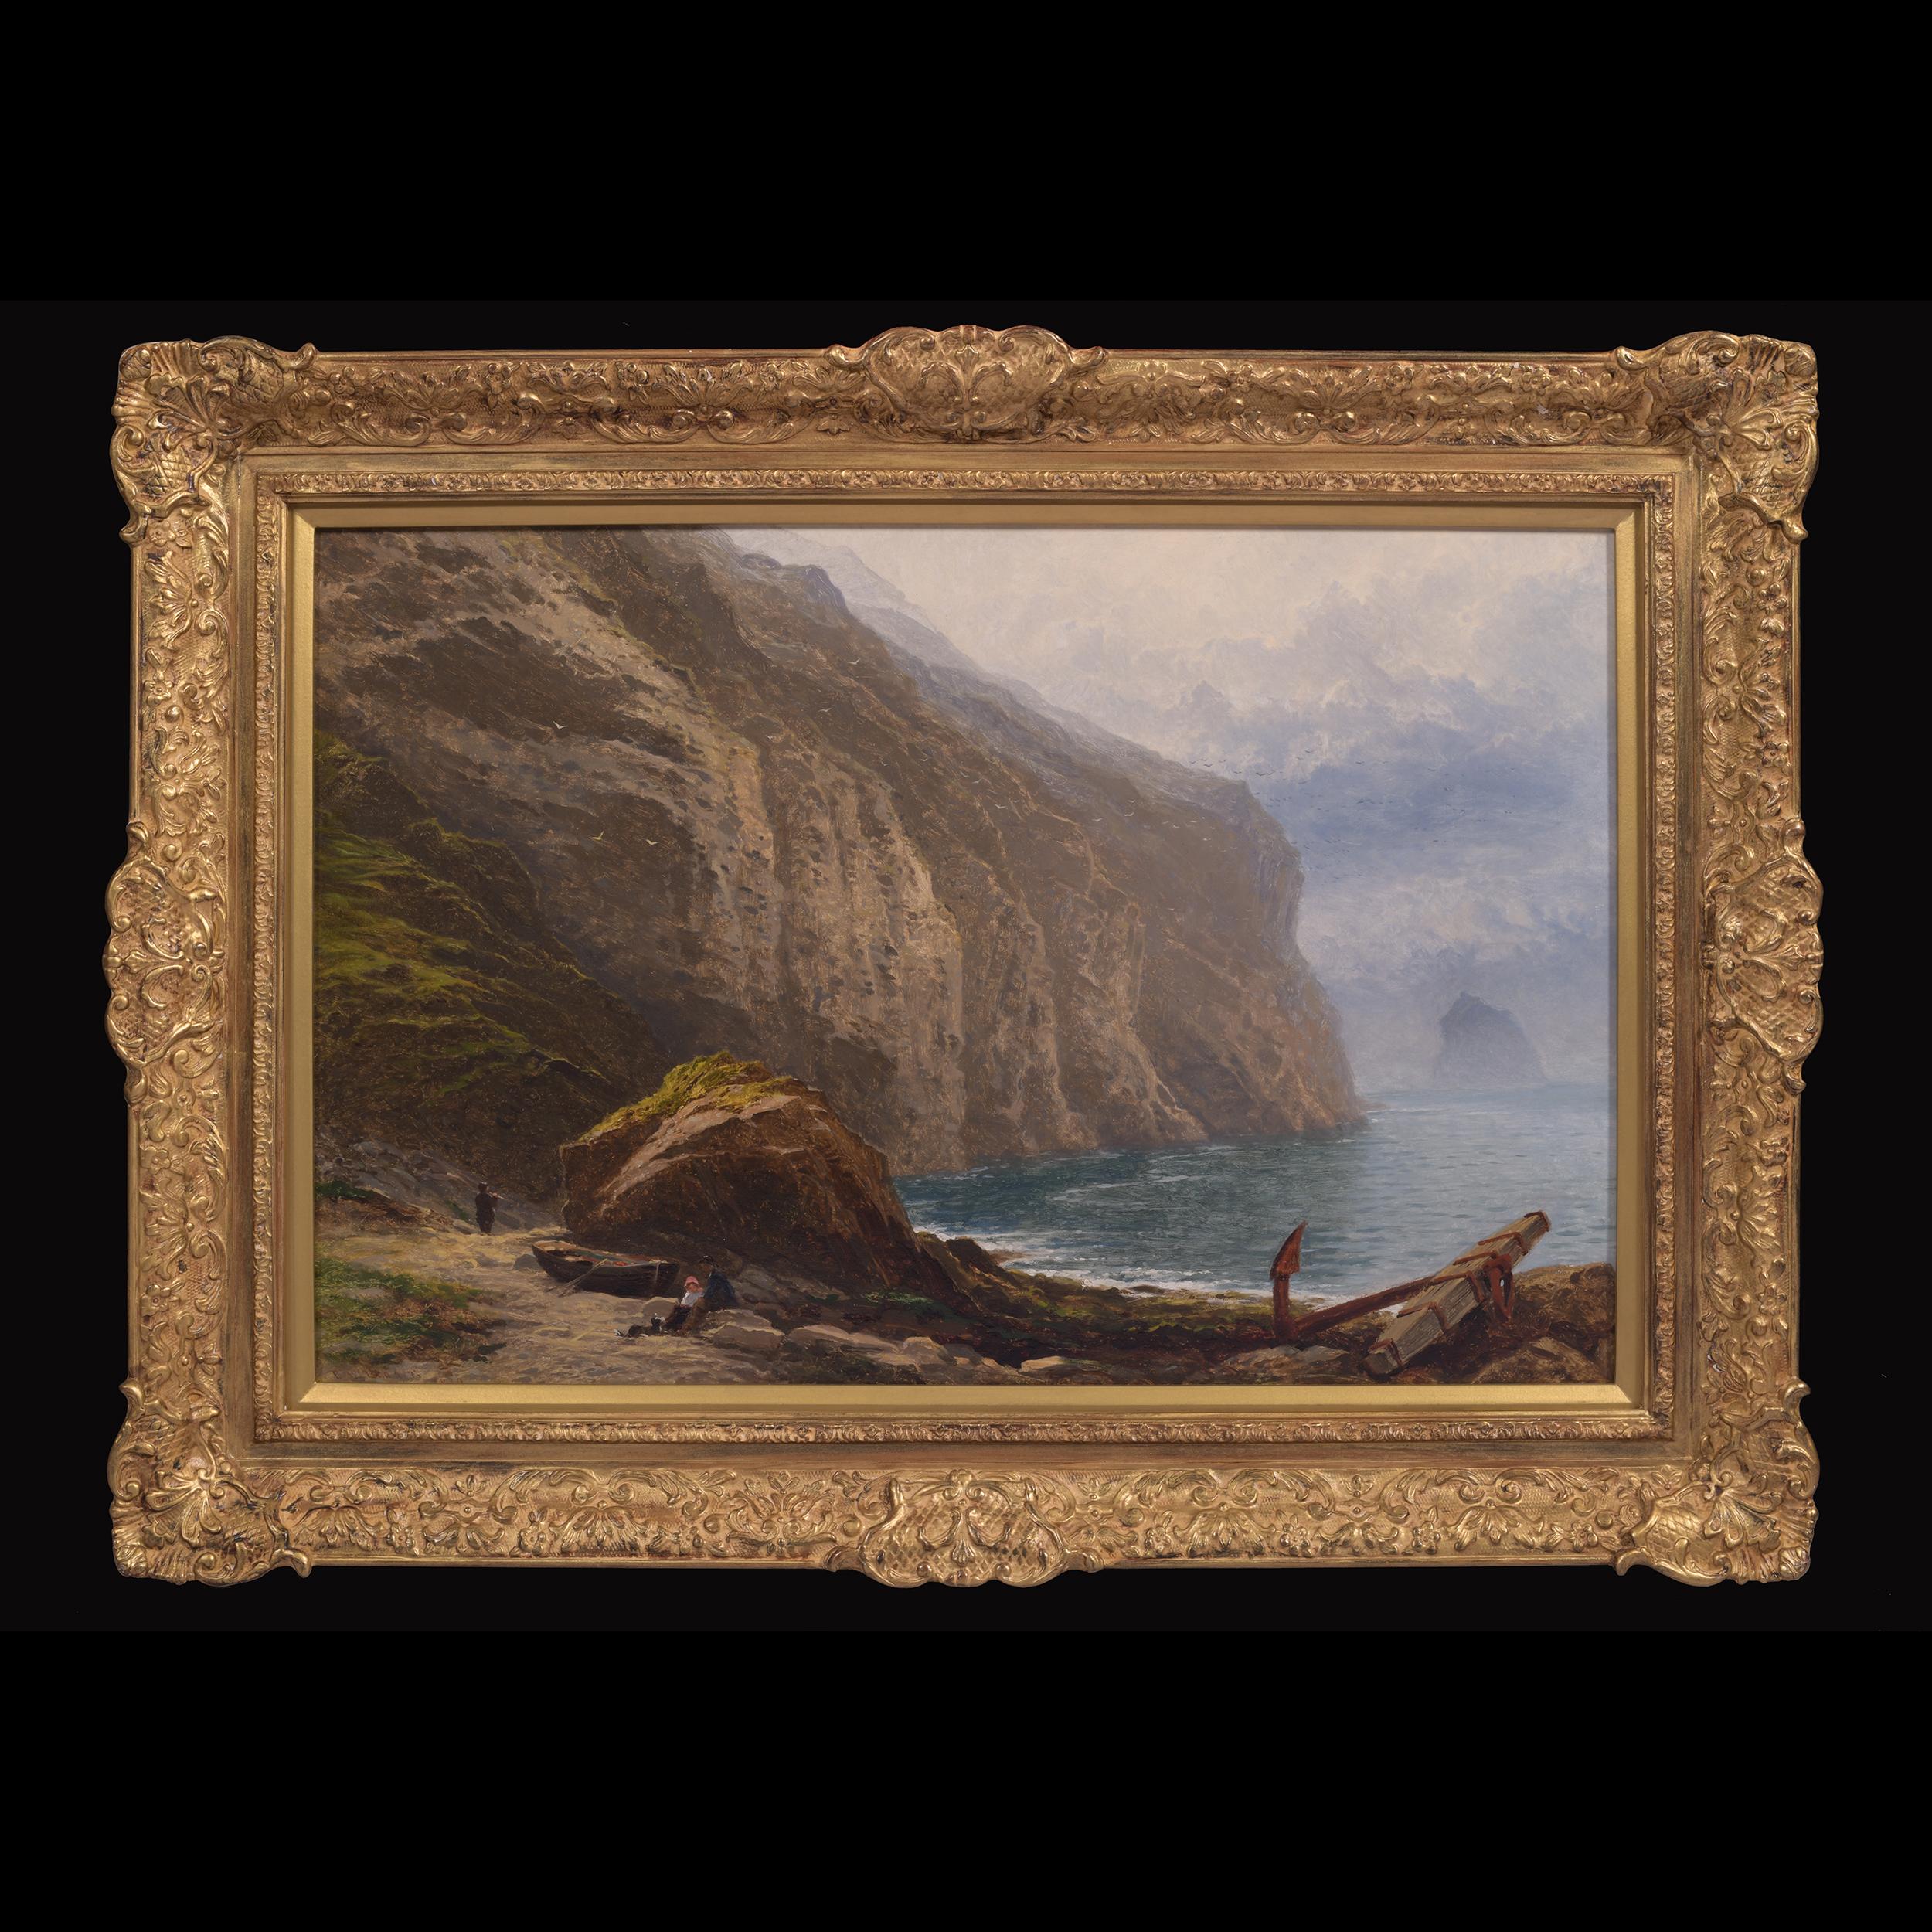 Eine sehr feine 19. Jahrhundert Küstenszene Gemälde des Atlantischen Ozeans in Tintagel, Cornwall, Vereinigtes Königreich von Benjamin Williams Leader in einem feinen Goldrahmen.

Künstler: Benjamin Williams Leader (1831-1923) , Brite.

Medium: